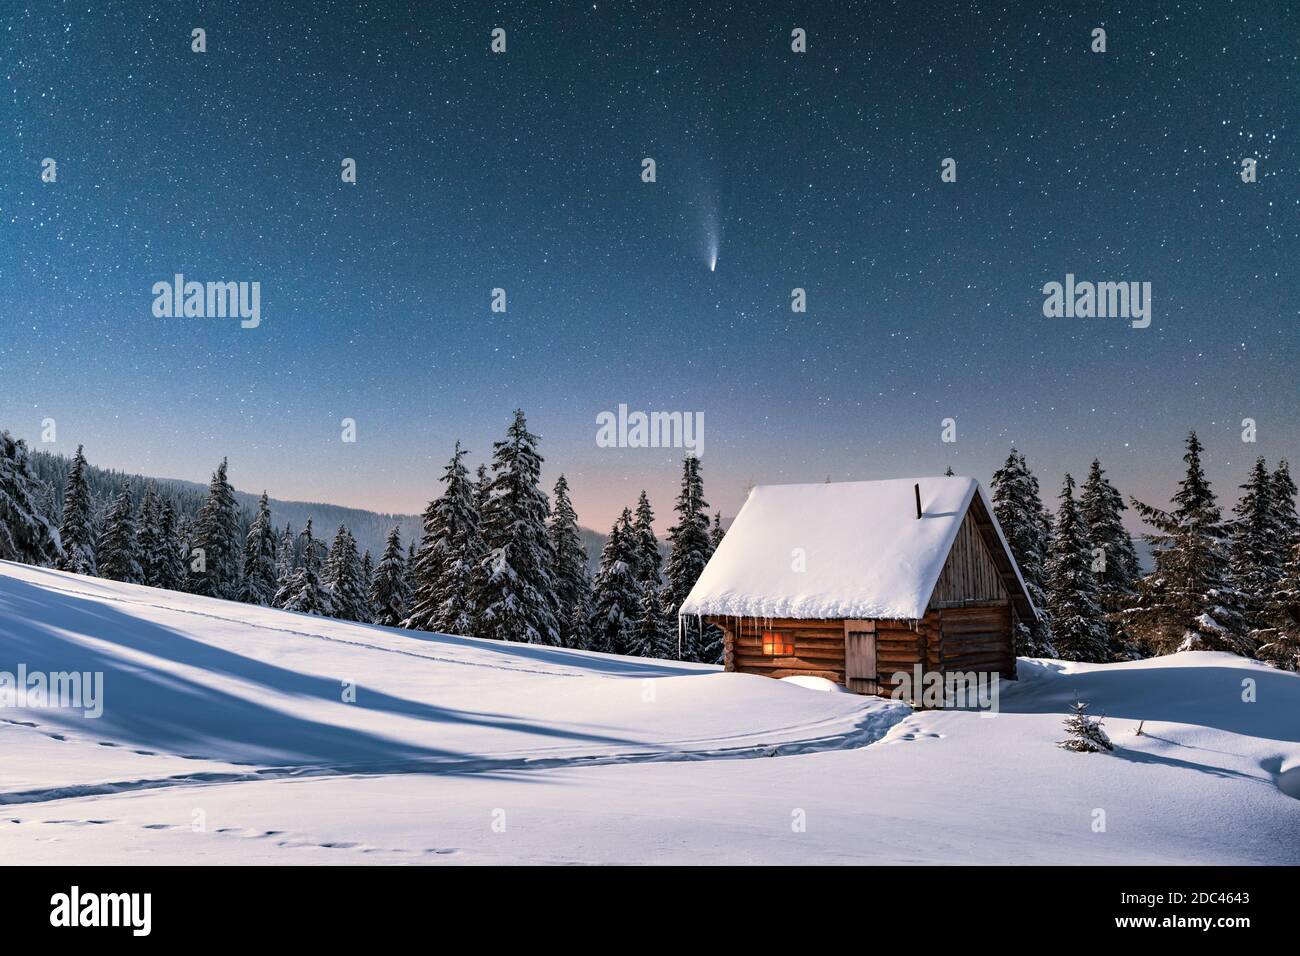 Fantastico paesaggio invernale con casa in legno in montagne innevate. Cielo stellato con cometa e capanna innevata. Vacanza di Natale e concetto di vacanza invernale Foto Stock